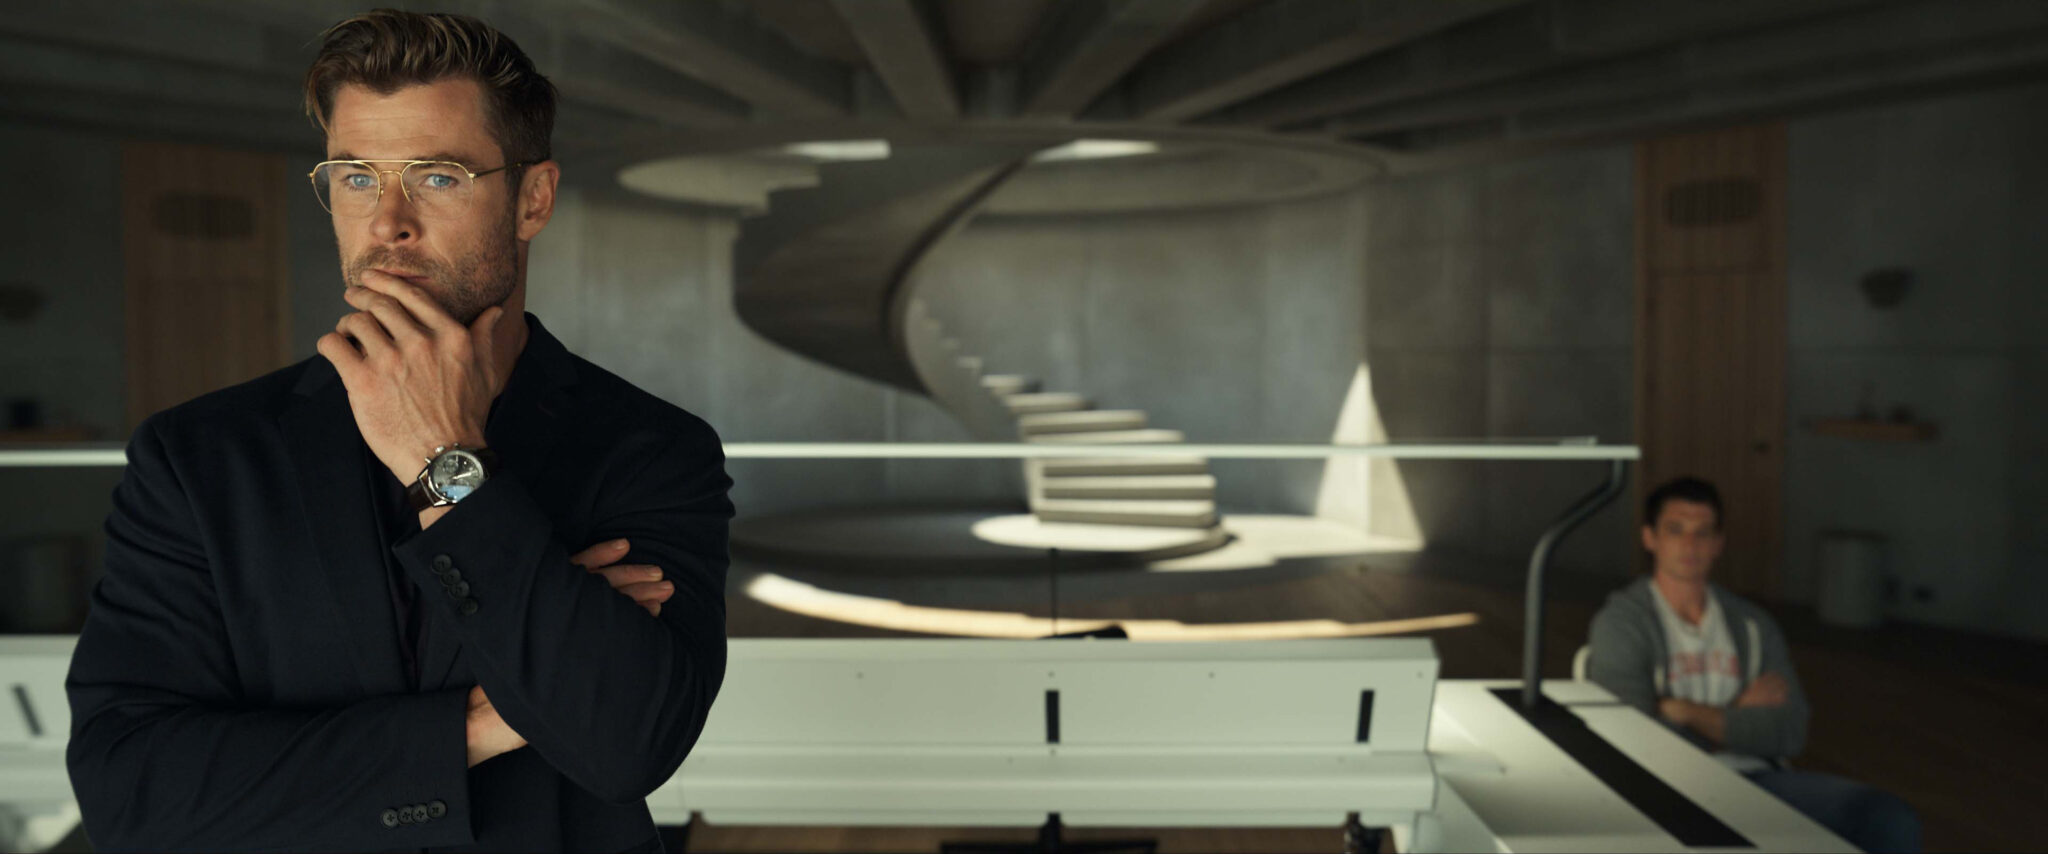 Chris Hemsworth in Der Spinnenkopf in einem Raum mit Betonwänden und einer Wendeltreppe in nachdenklicher Pose im Vordergrund.